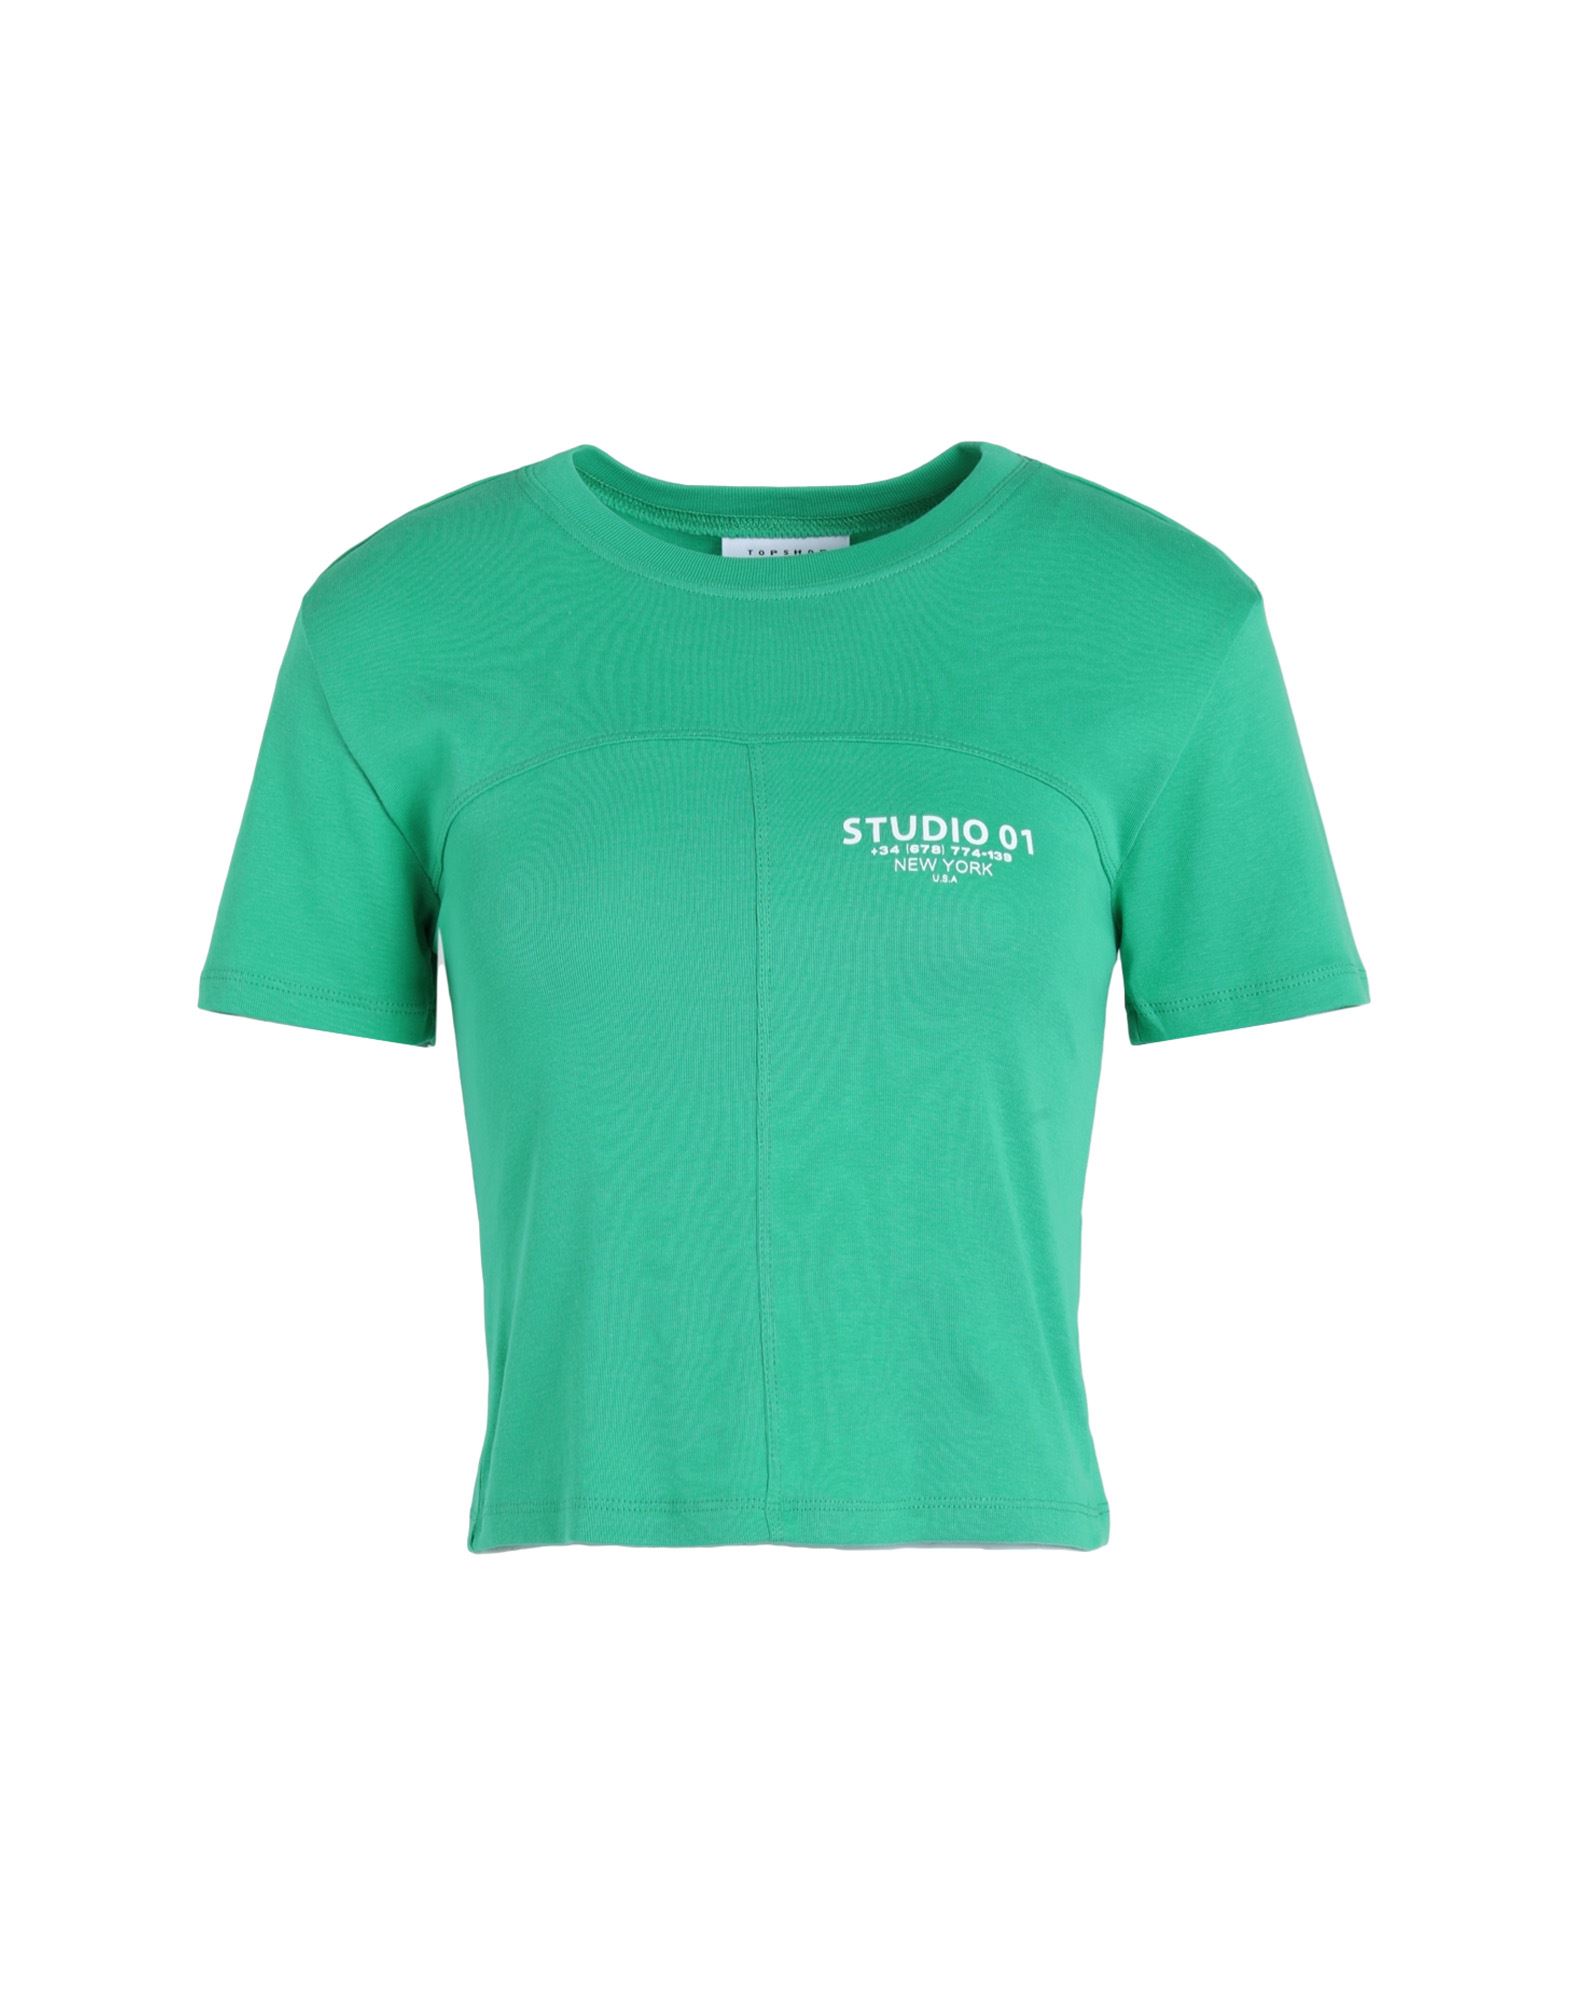 TOPSHOP T-shirts Damen Grün von TOPSHOP